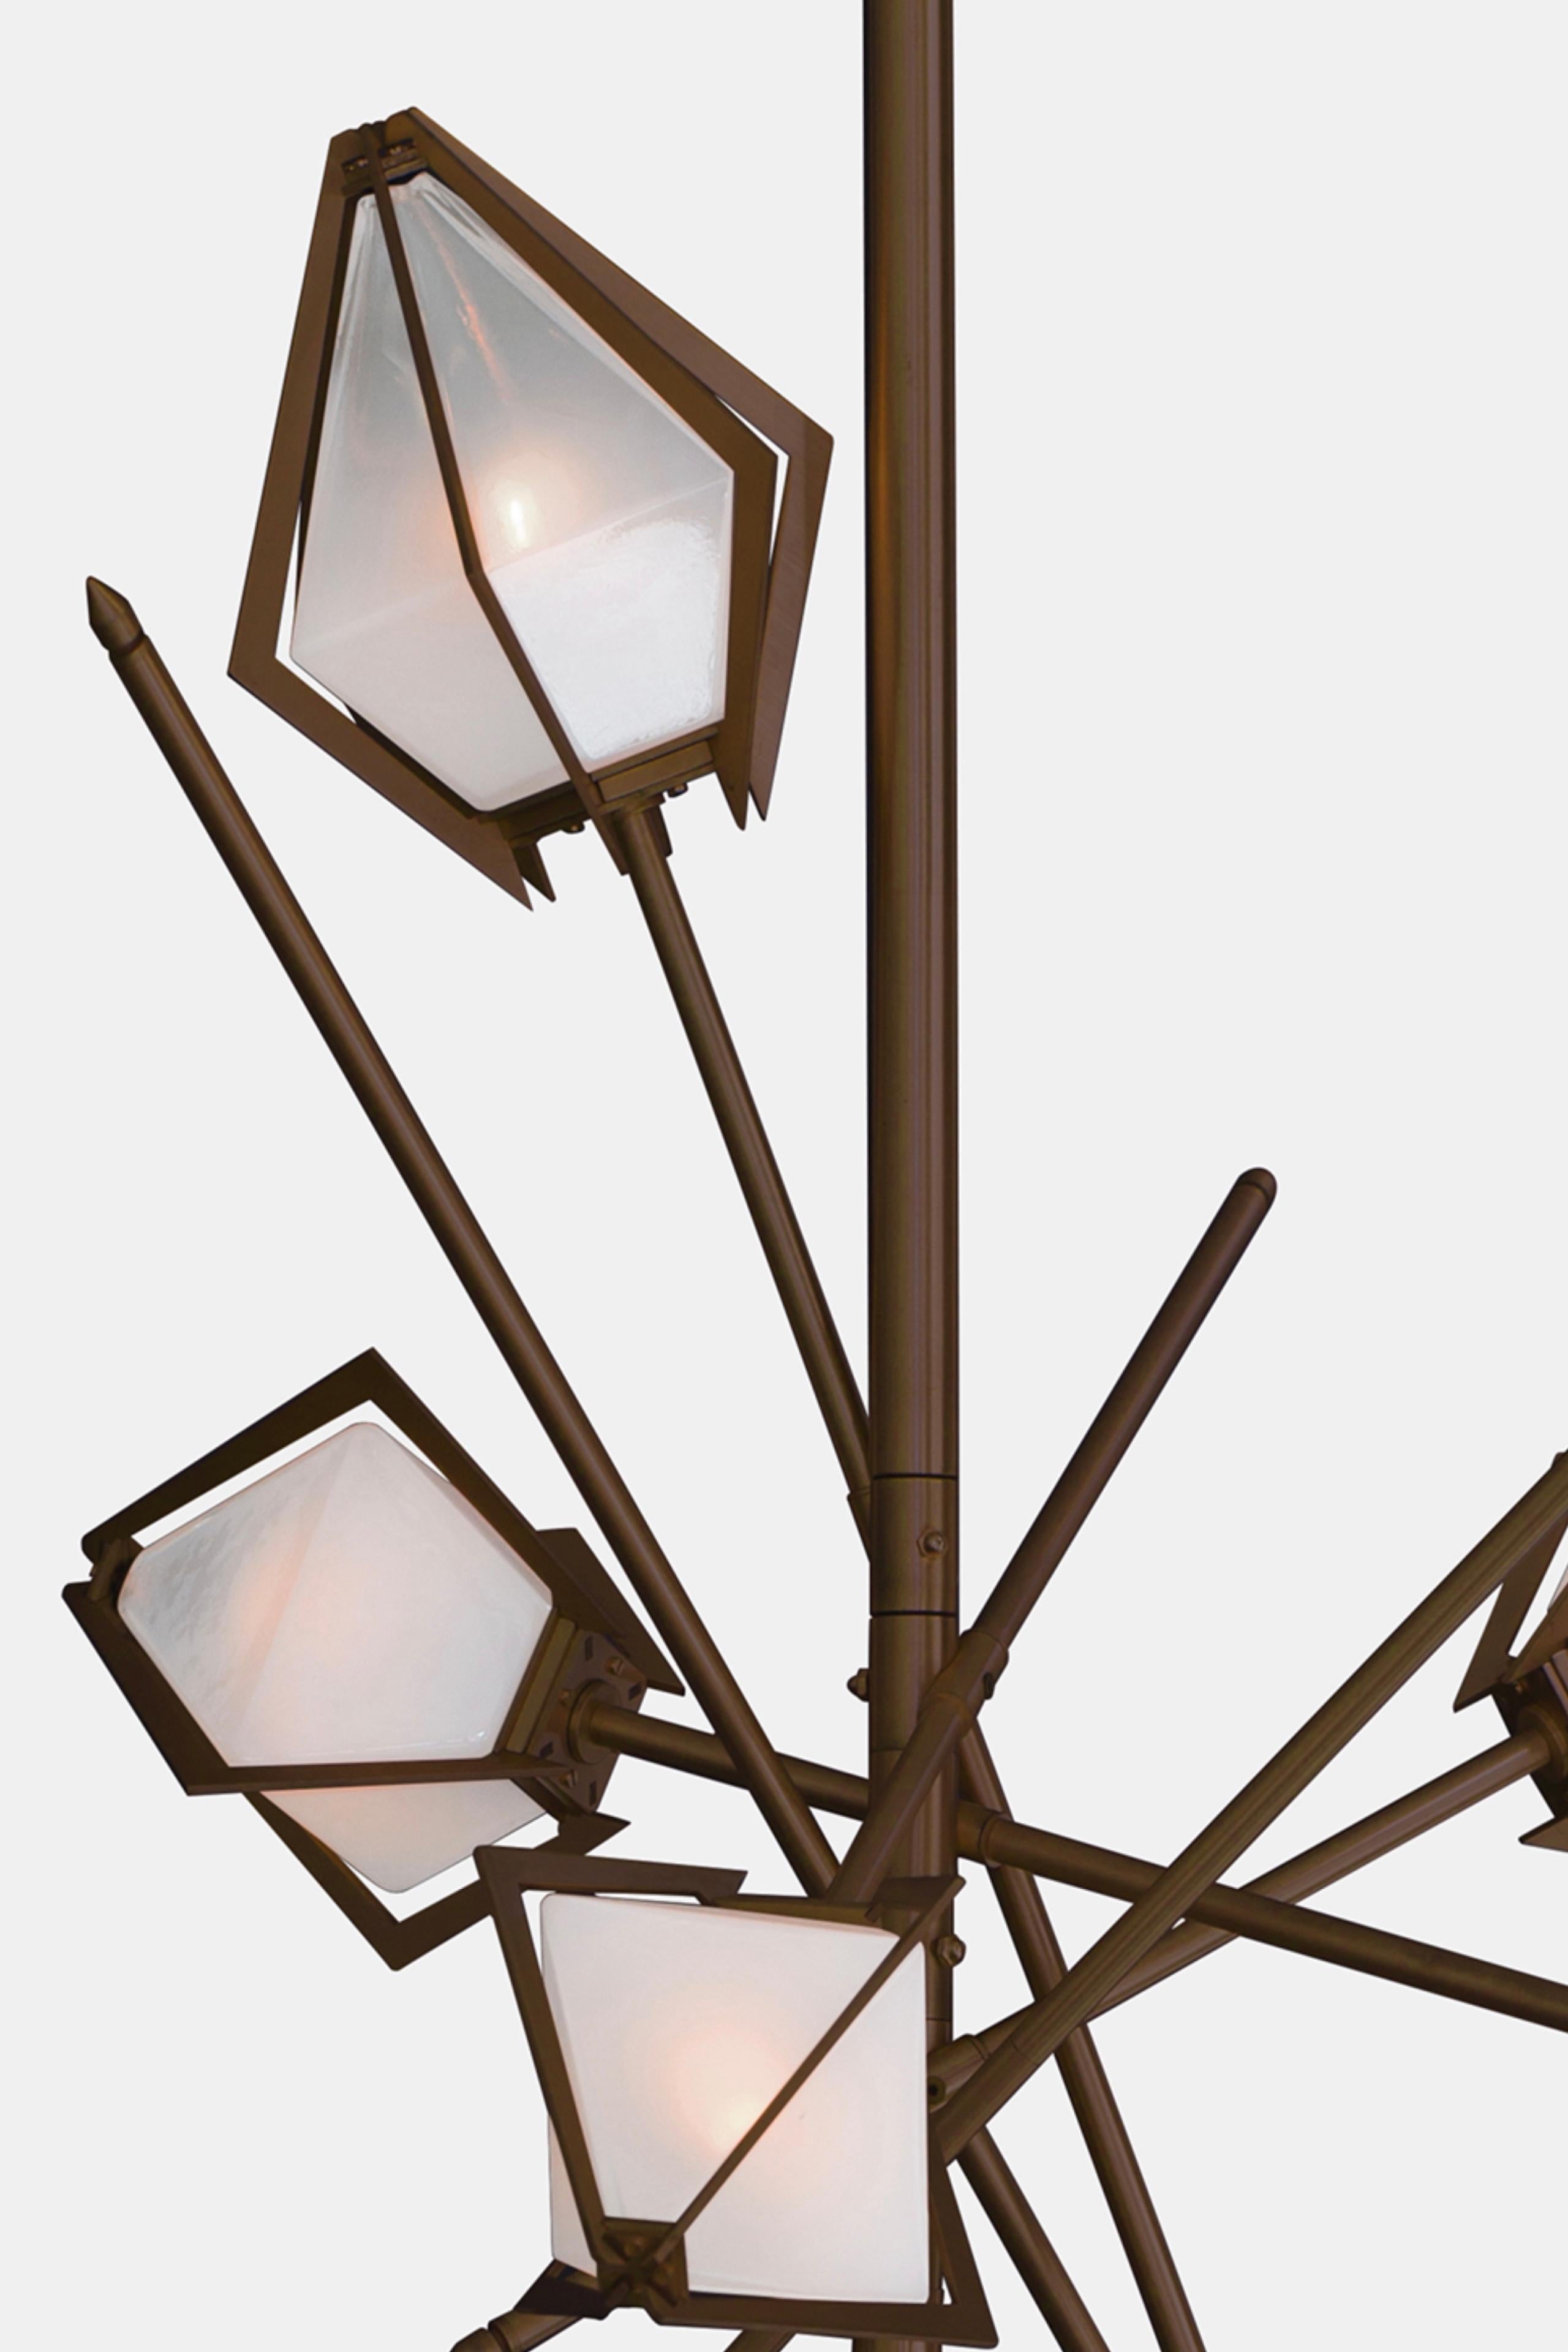 Der Harlow Small Chandelier bietet einen eleganten Sternenhimmel, der das Licht durch seinen Schirm aus mundgeblasenem Glas reflektiert und bricht. Der Harlow Small Chandelier ist ein funkelndes Prisma, das direkt von der Welt des Schmucks